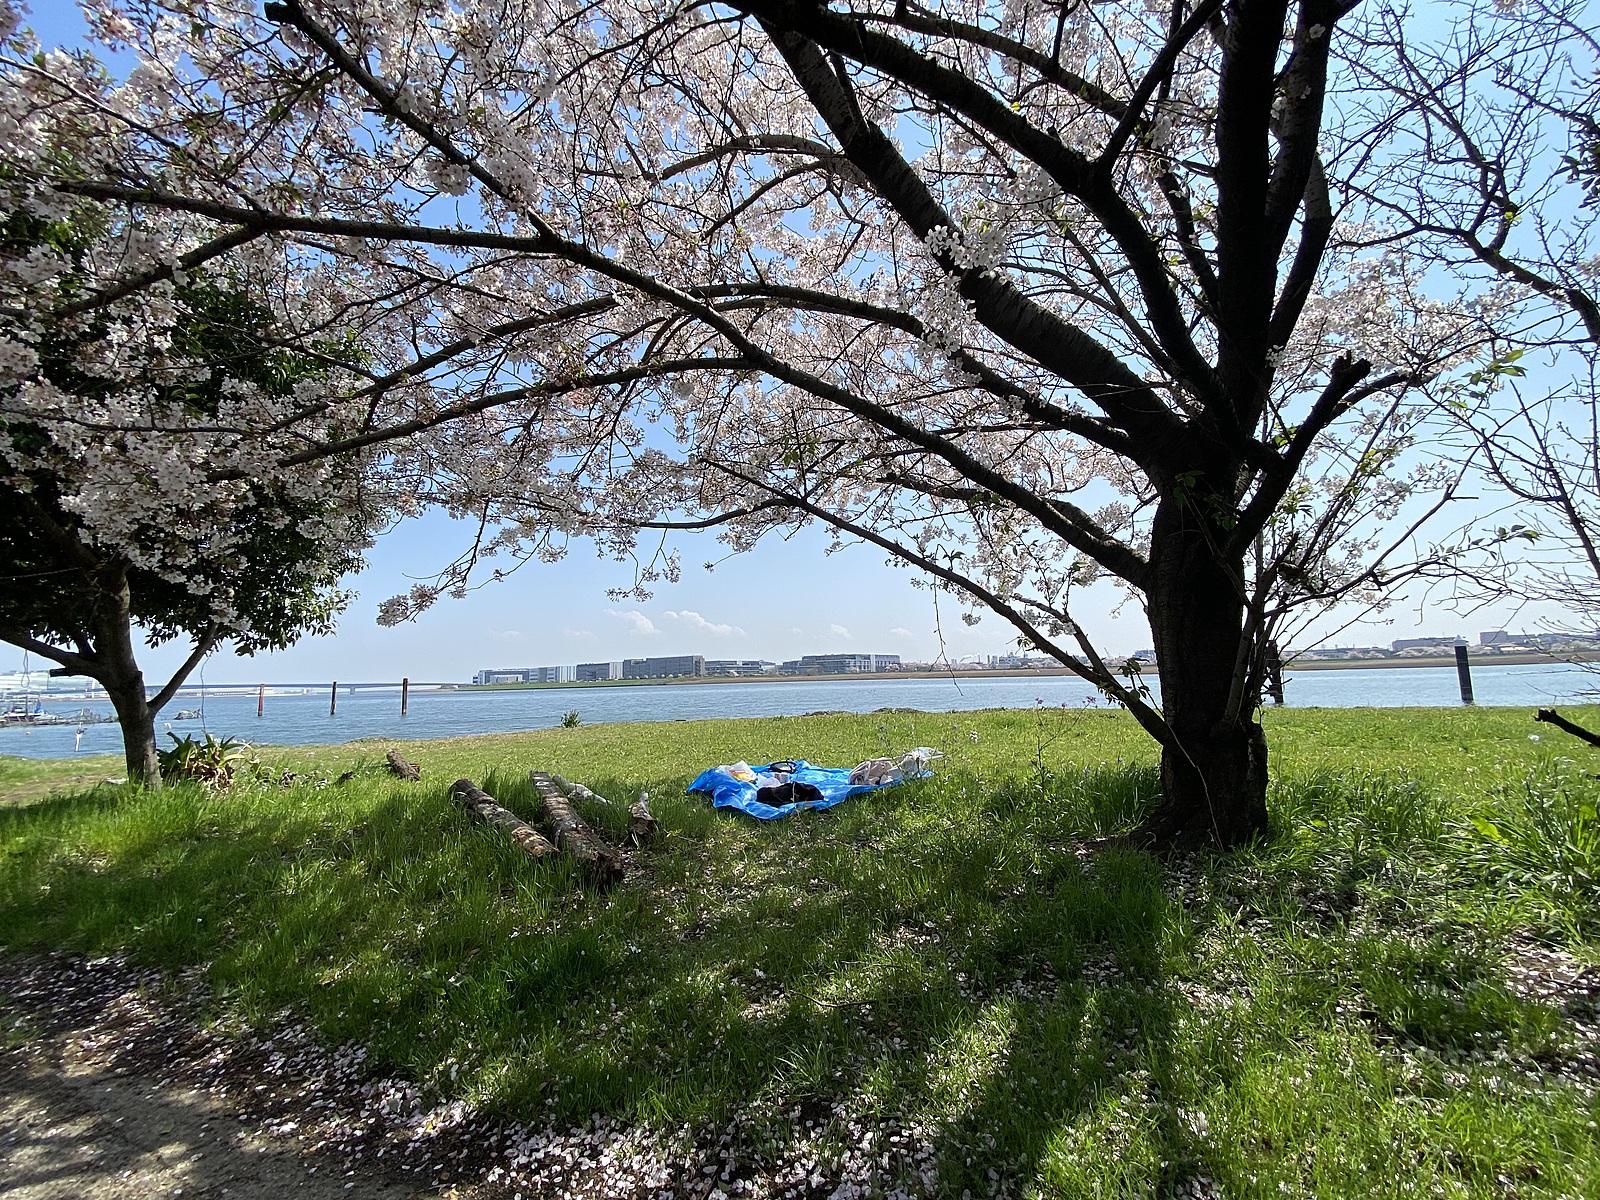 お花見ピクニック@羽田空港周辺🌸/a picnic with cherry blossoms! E